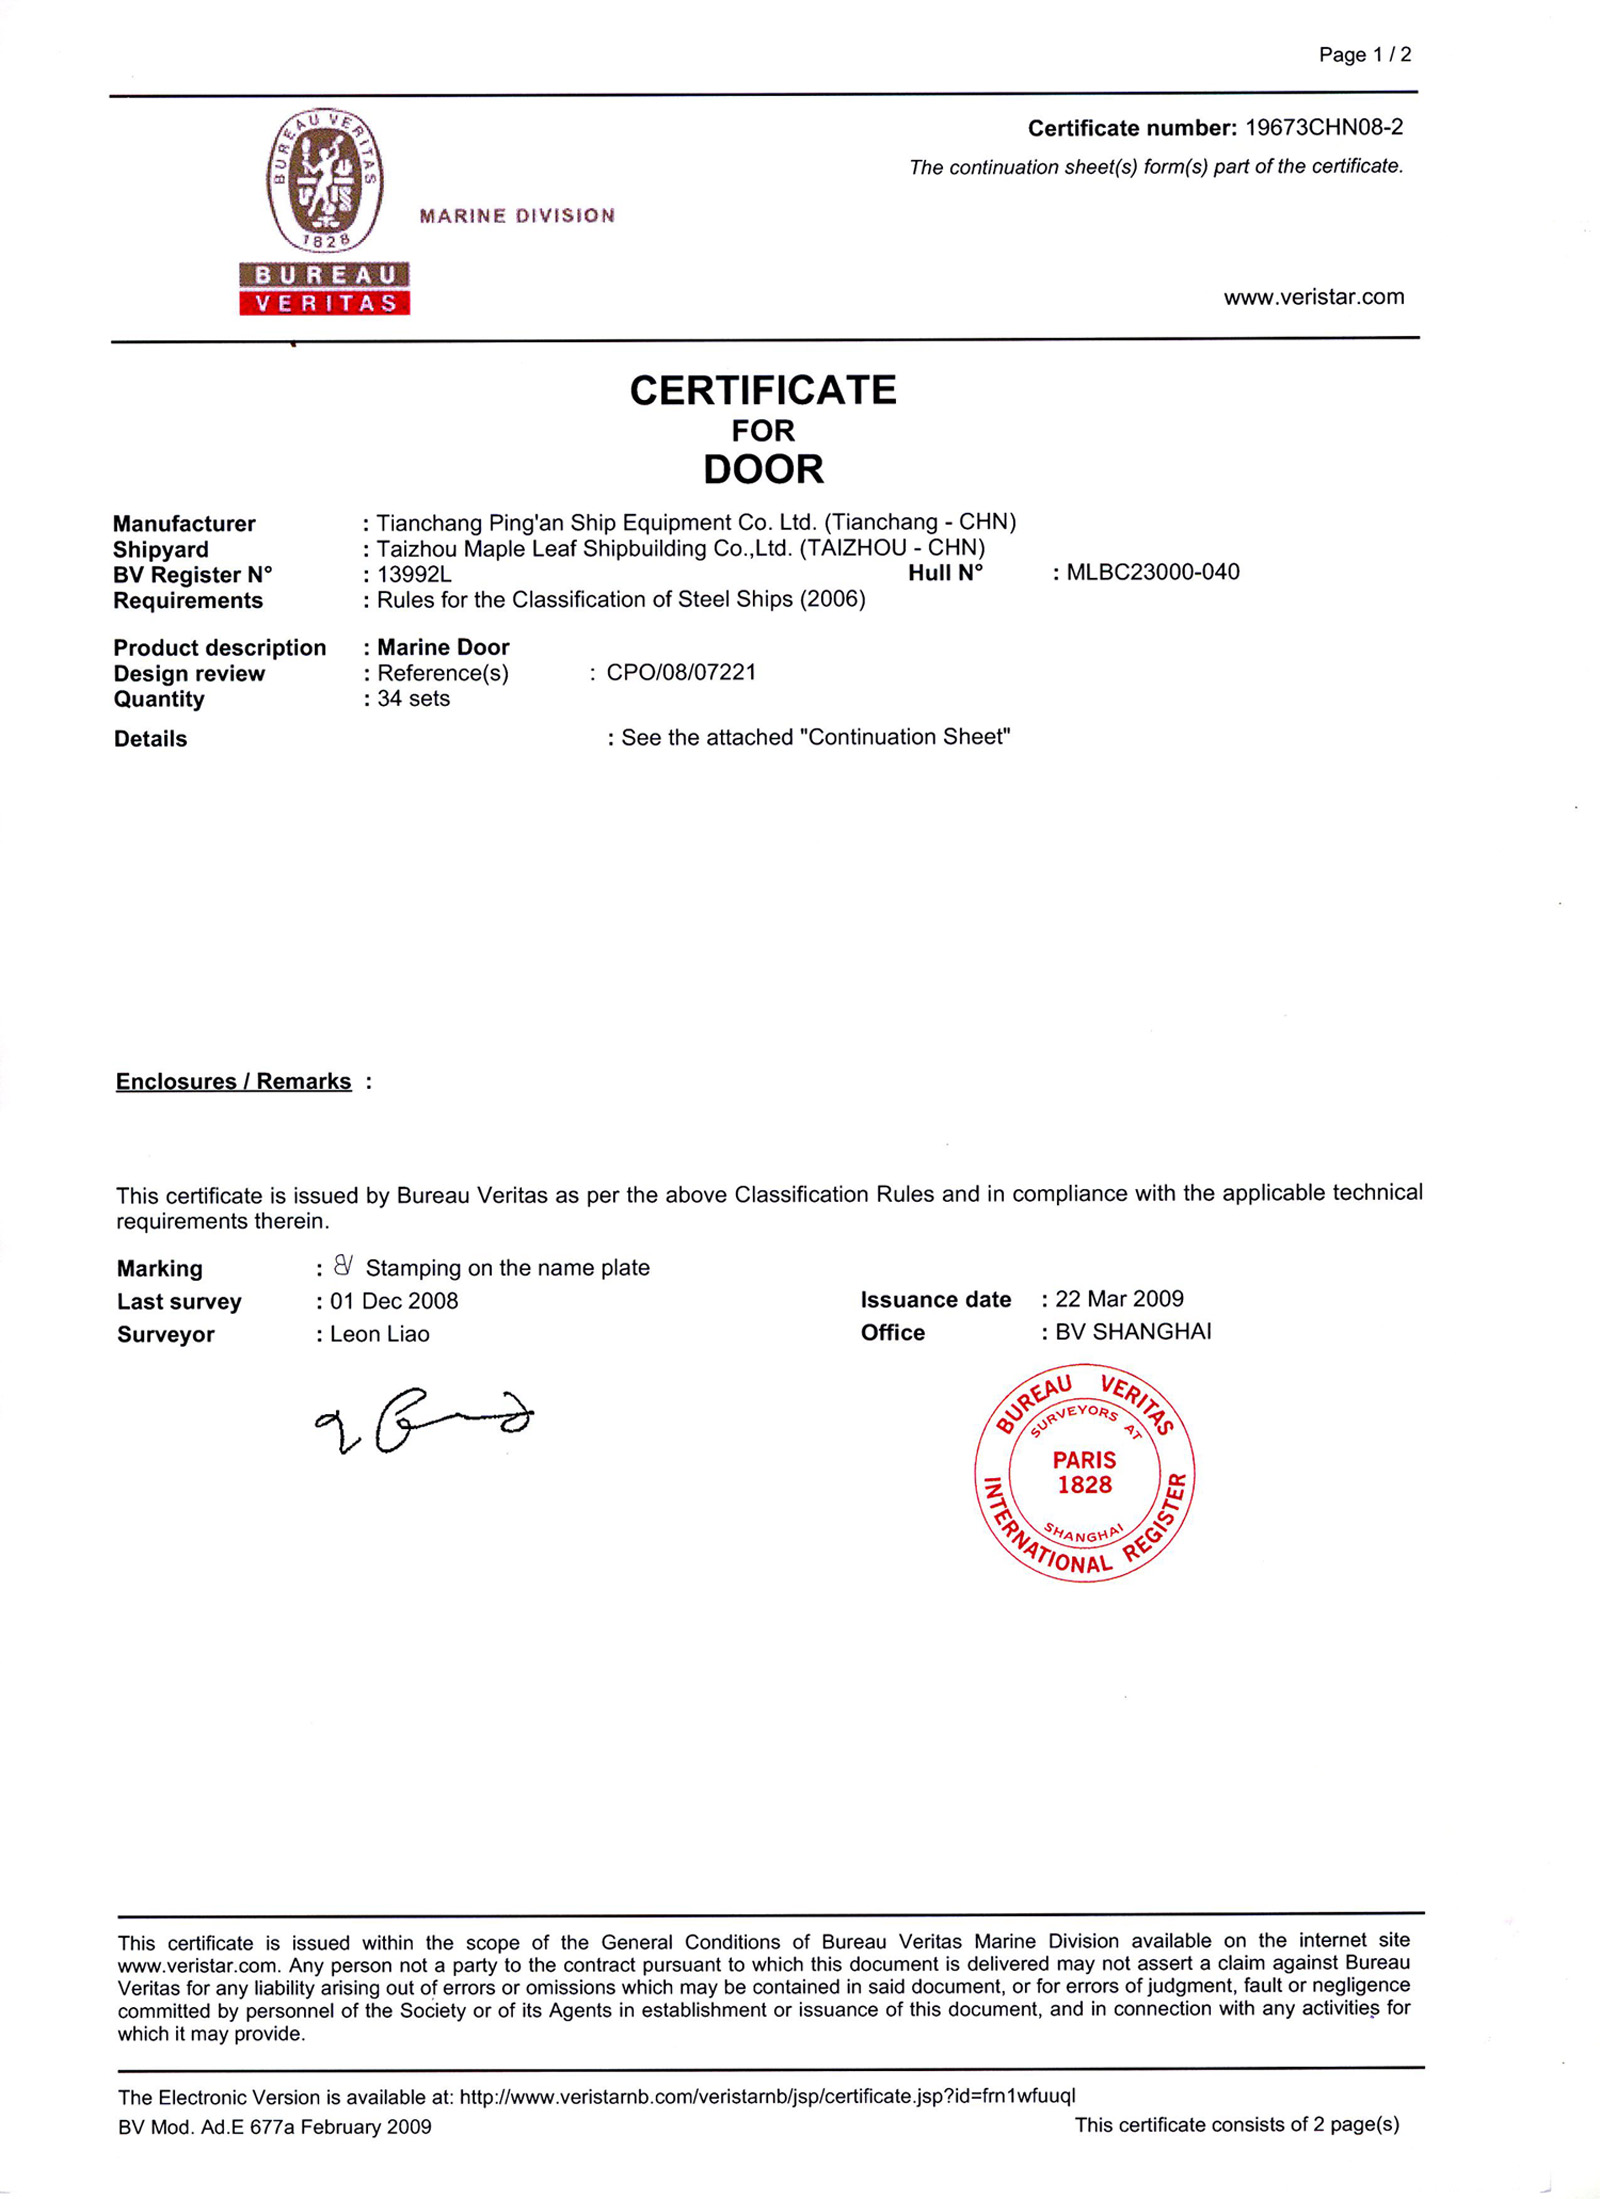 BV Certificate of Marine Doors